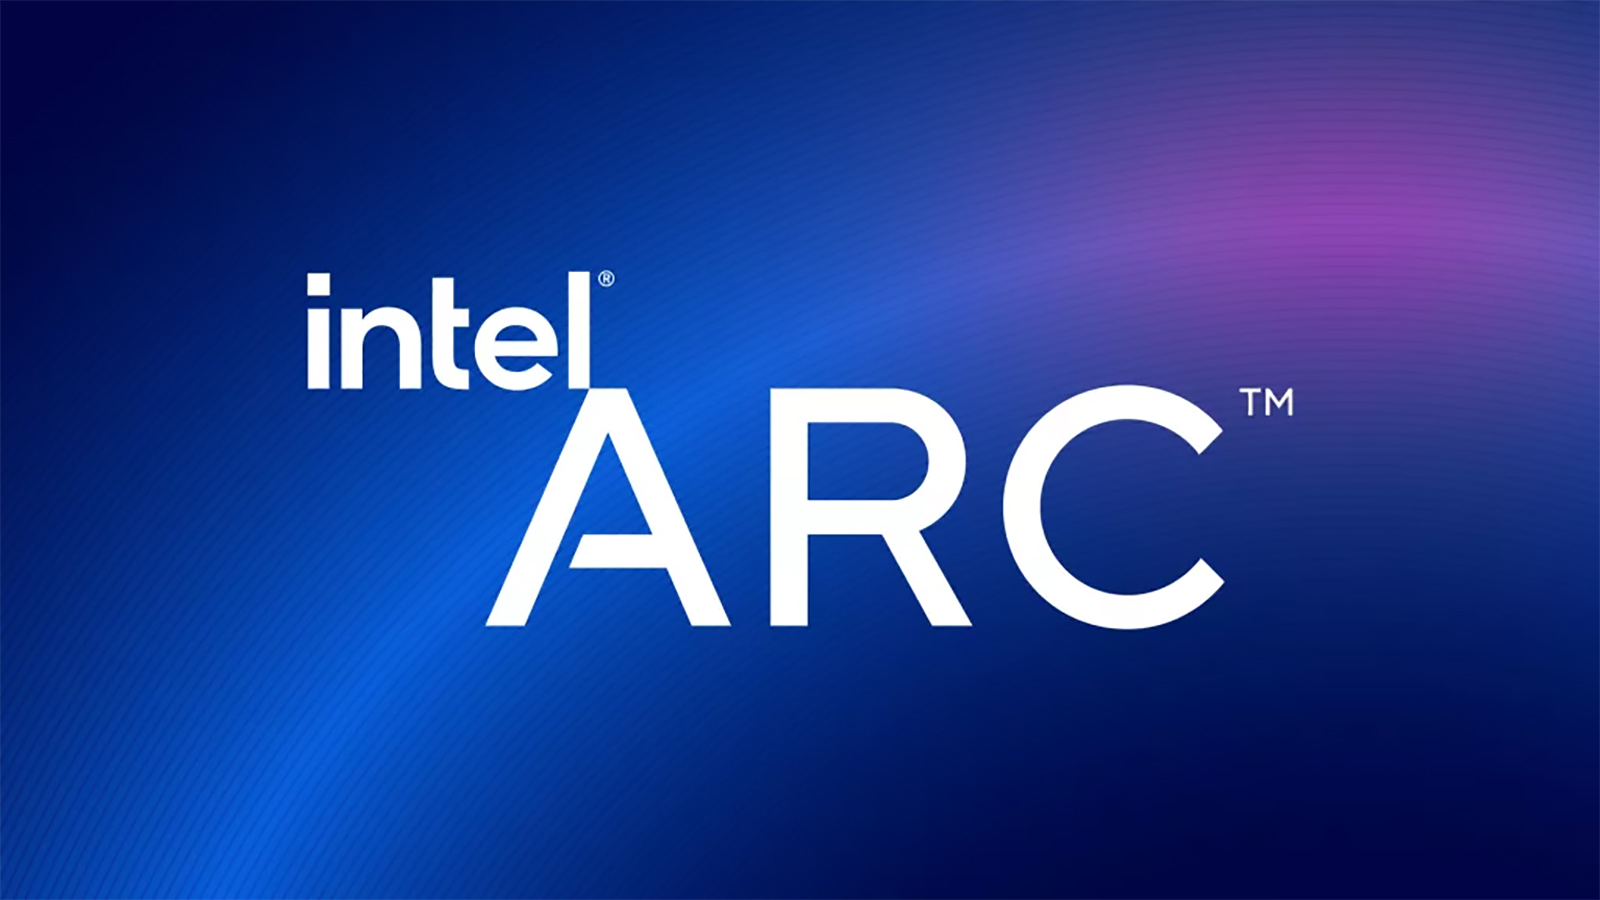 英特尔即将推出新的 Line of Arc 笔记本电脑 GPU